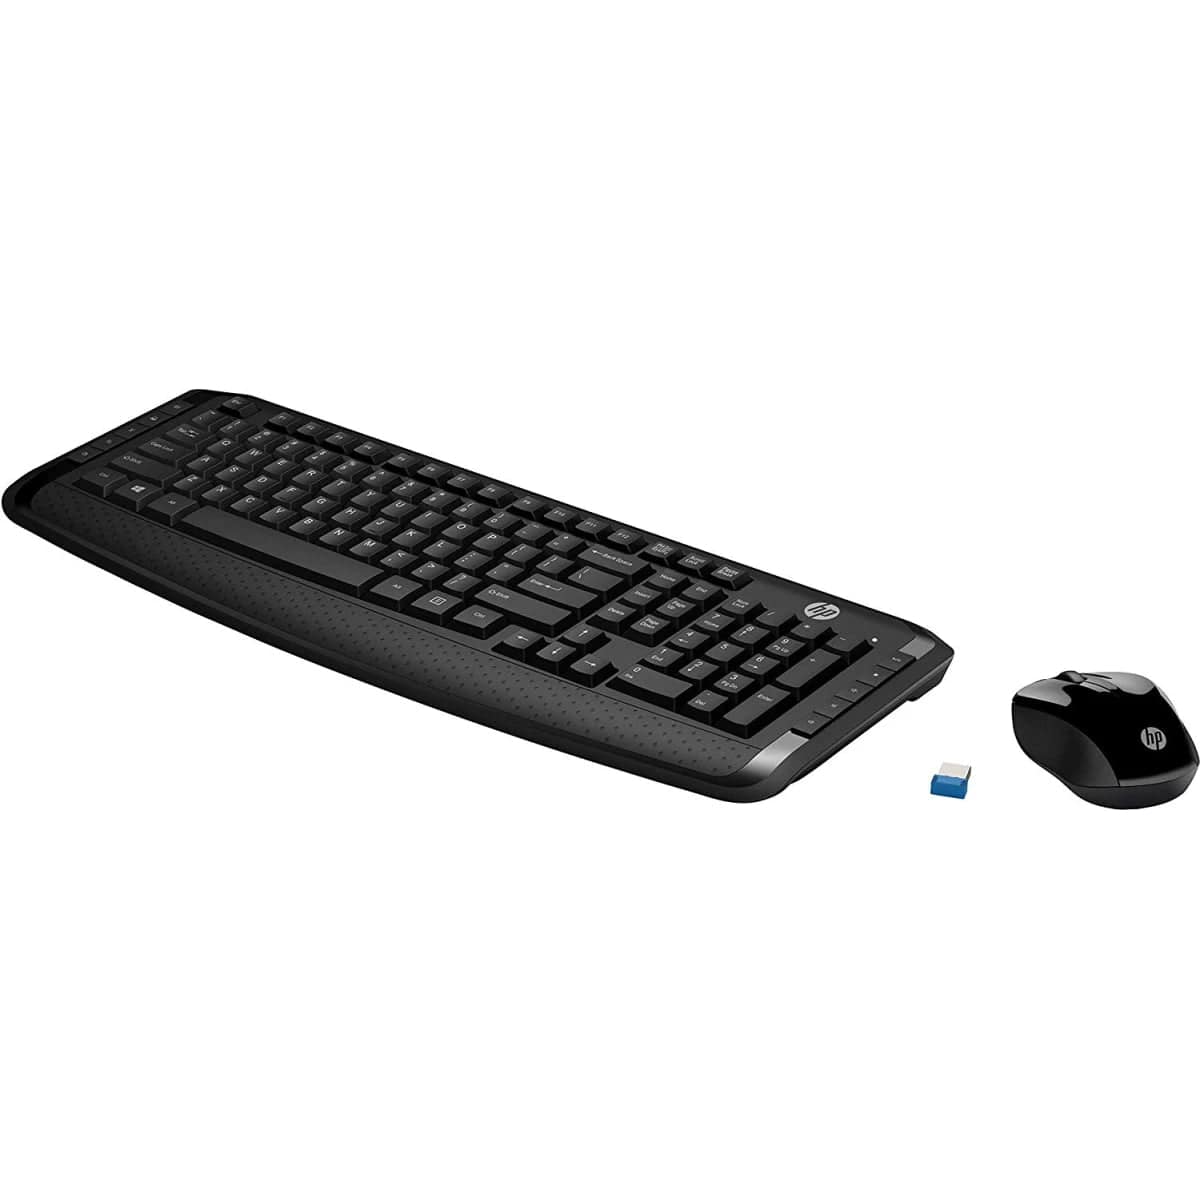 FANTECH Keyboard HP 300 Wireless Keyboard and Mouse Combo Arabic / English Layout - Black